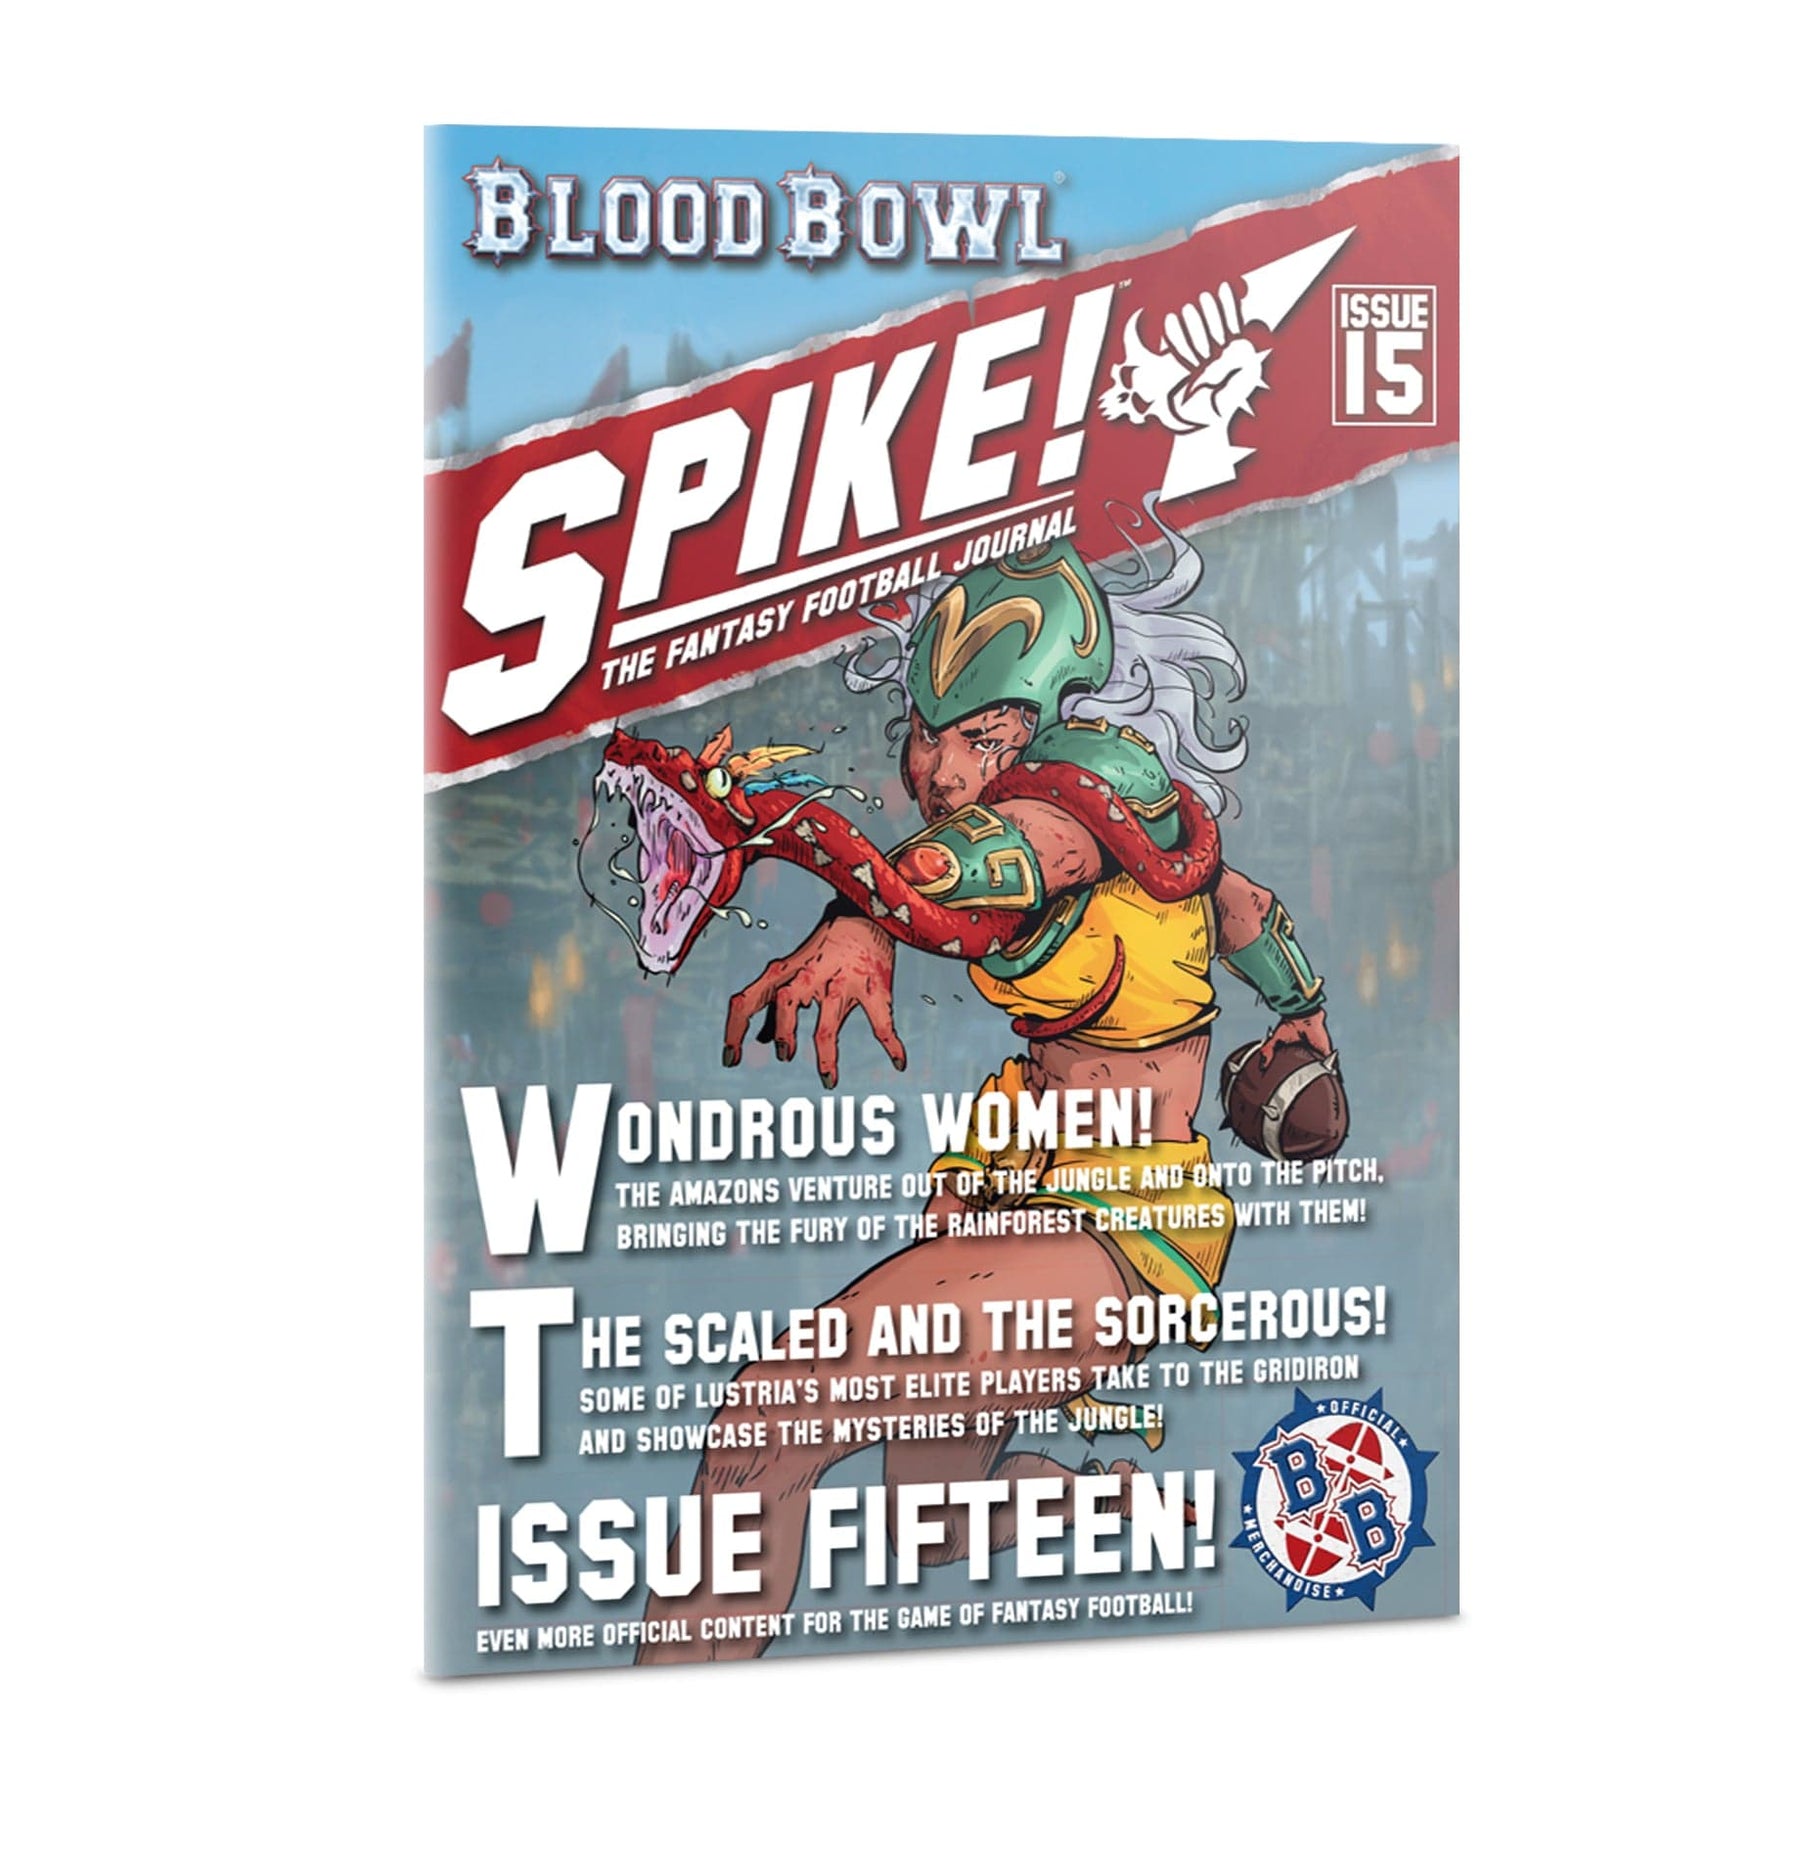 Warhammer - Bloodbowl: Spike! #15